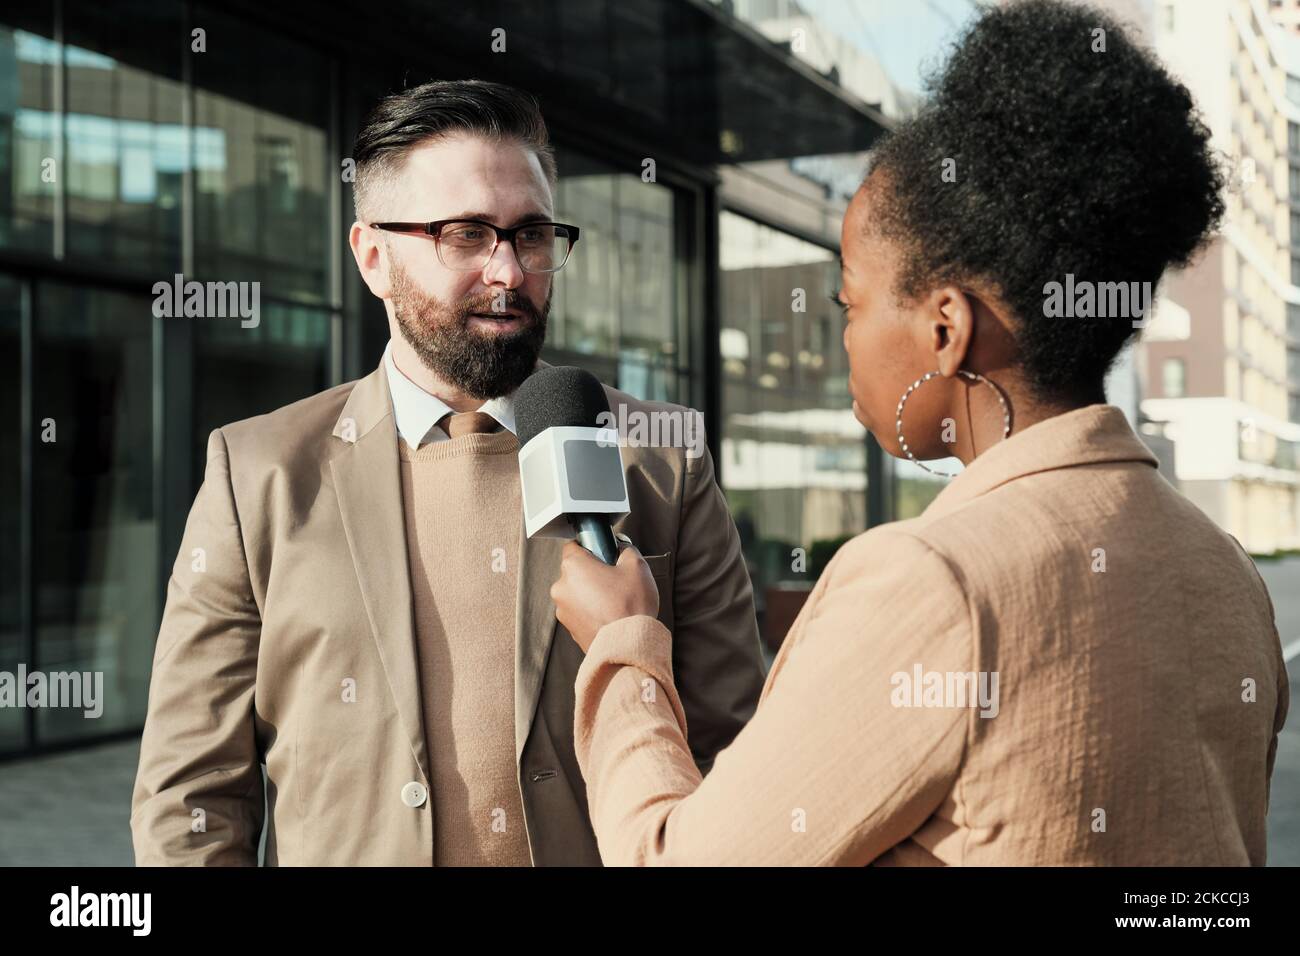 Donna africana con microfono che intervistano l'uomo mentre si levano in piedi in città Foto Stock